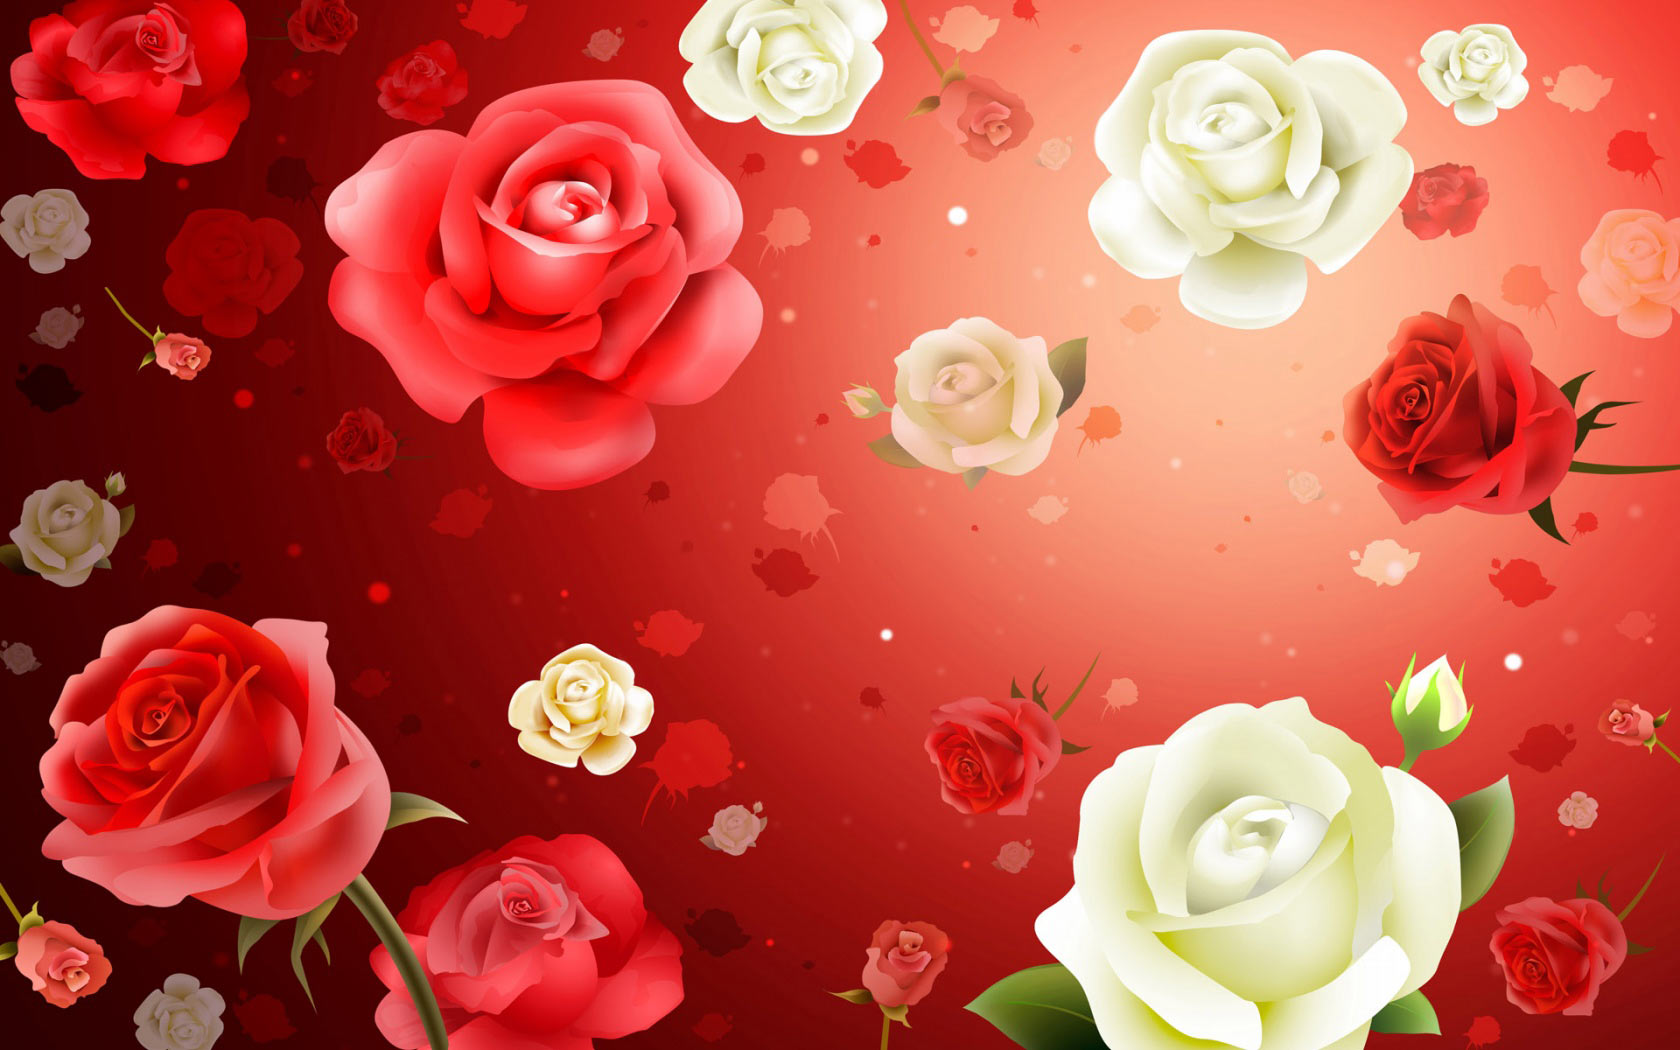 rose flower backgrounds design